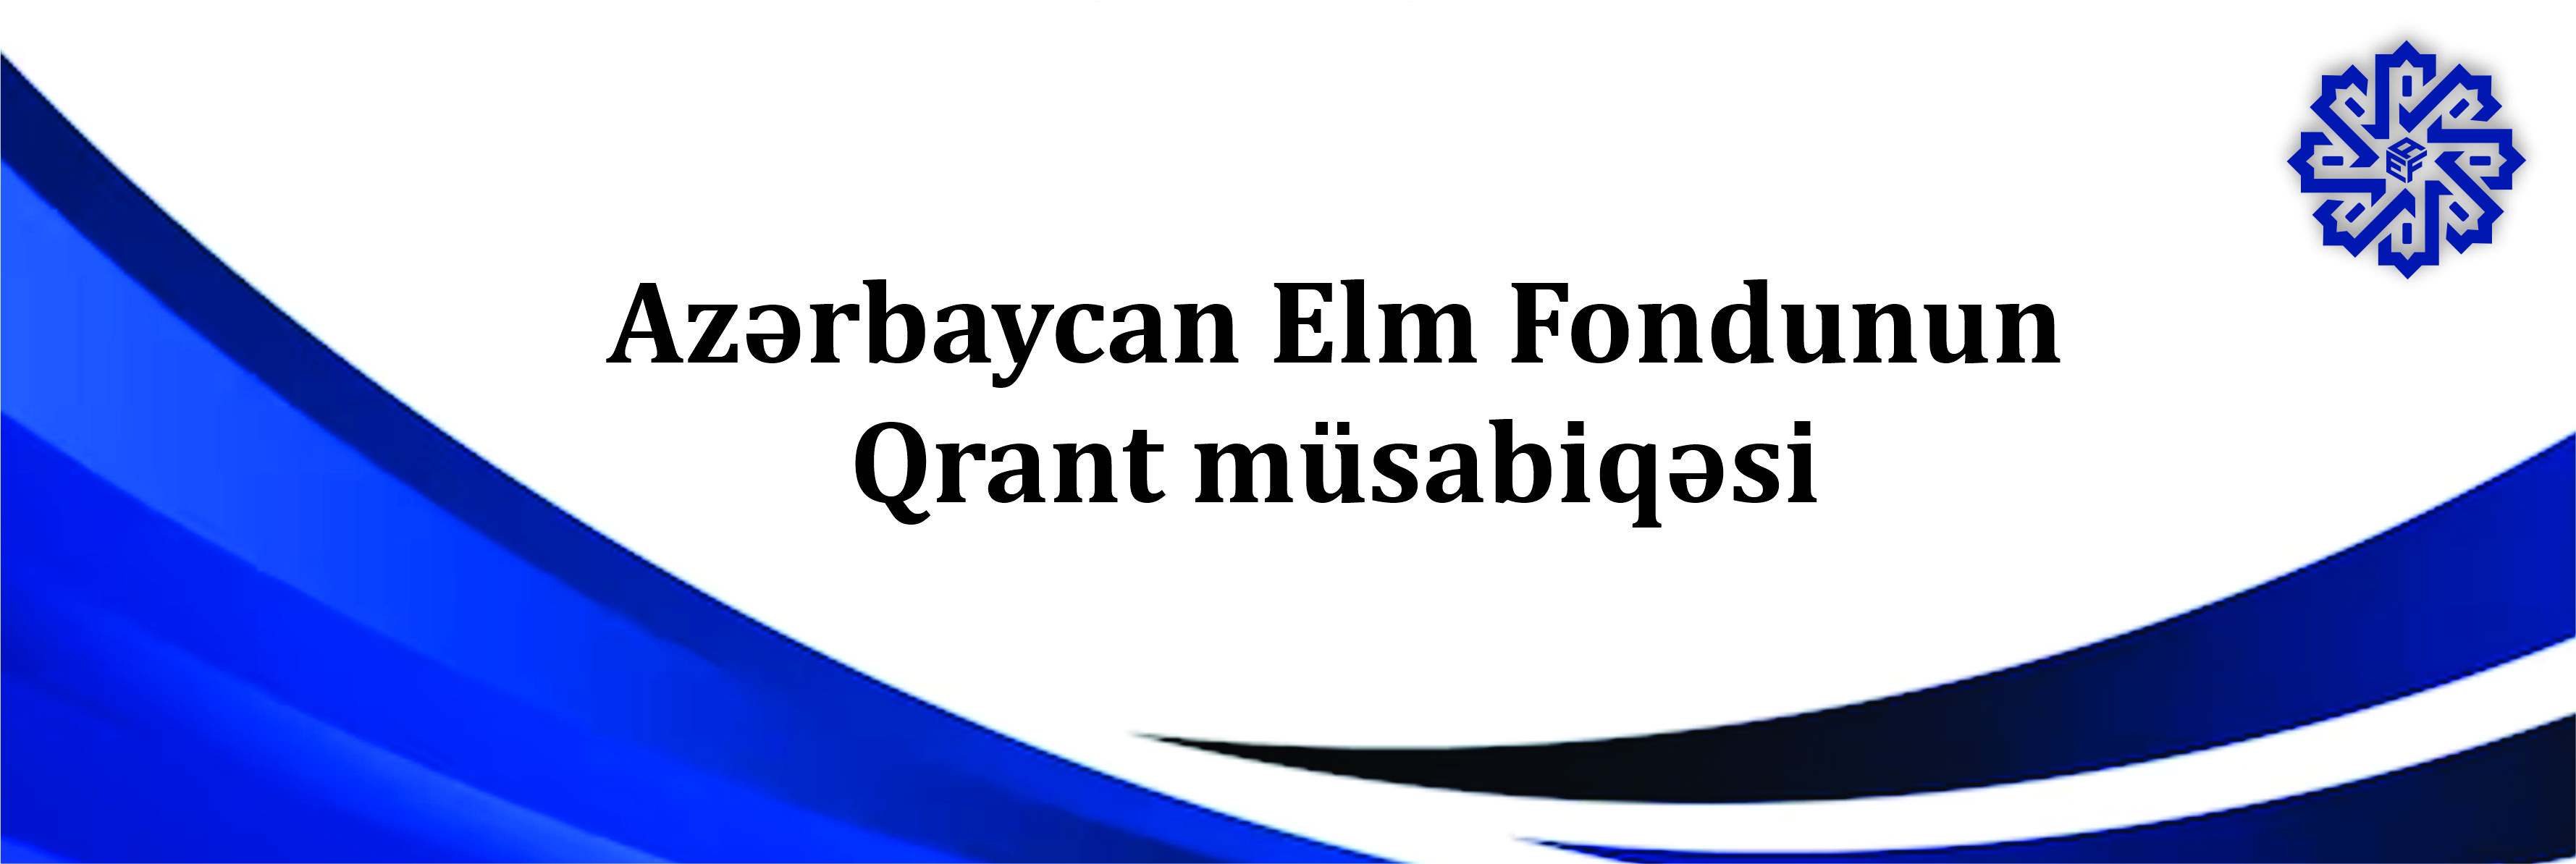 Azərbaycan Elm Fondu “Qarabağ Azərbaycandır-2!” məqsədli qrant müsabiqəsini elan edir.